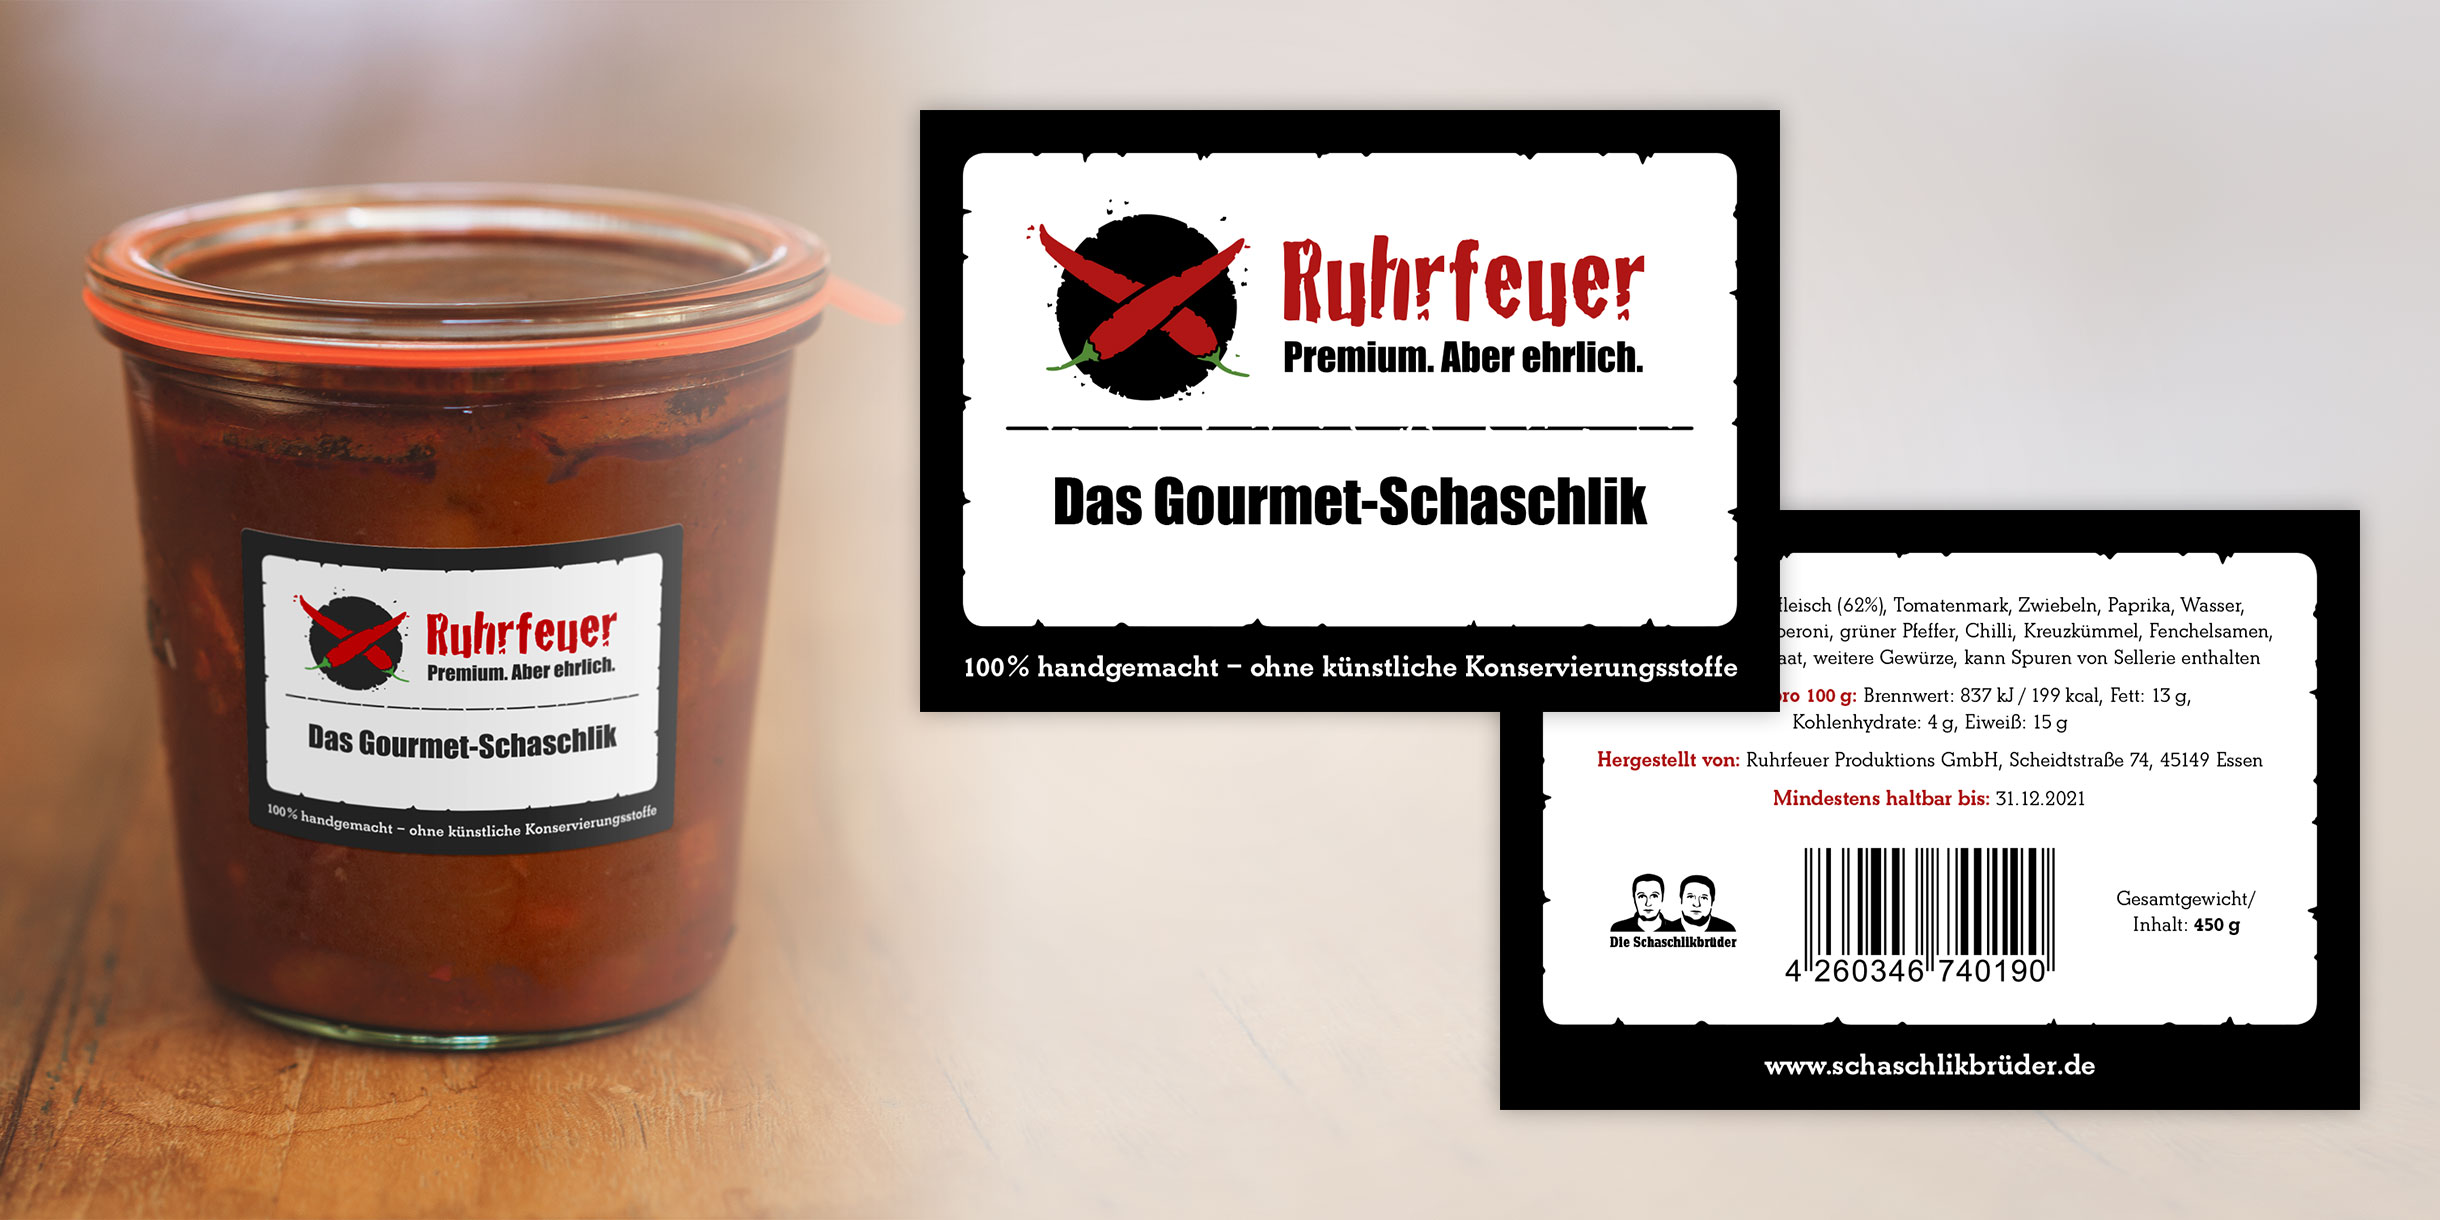 Ruhrfeuer Markenauftritt - Schaschlik Etikett